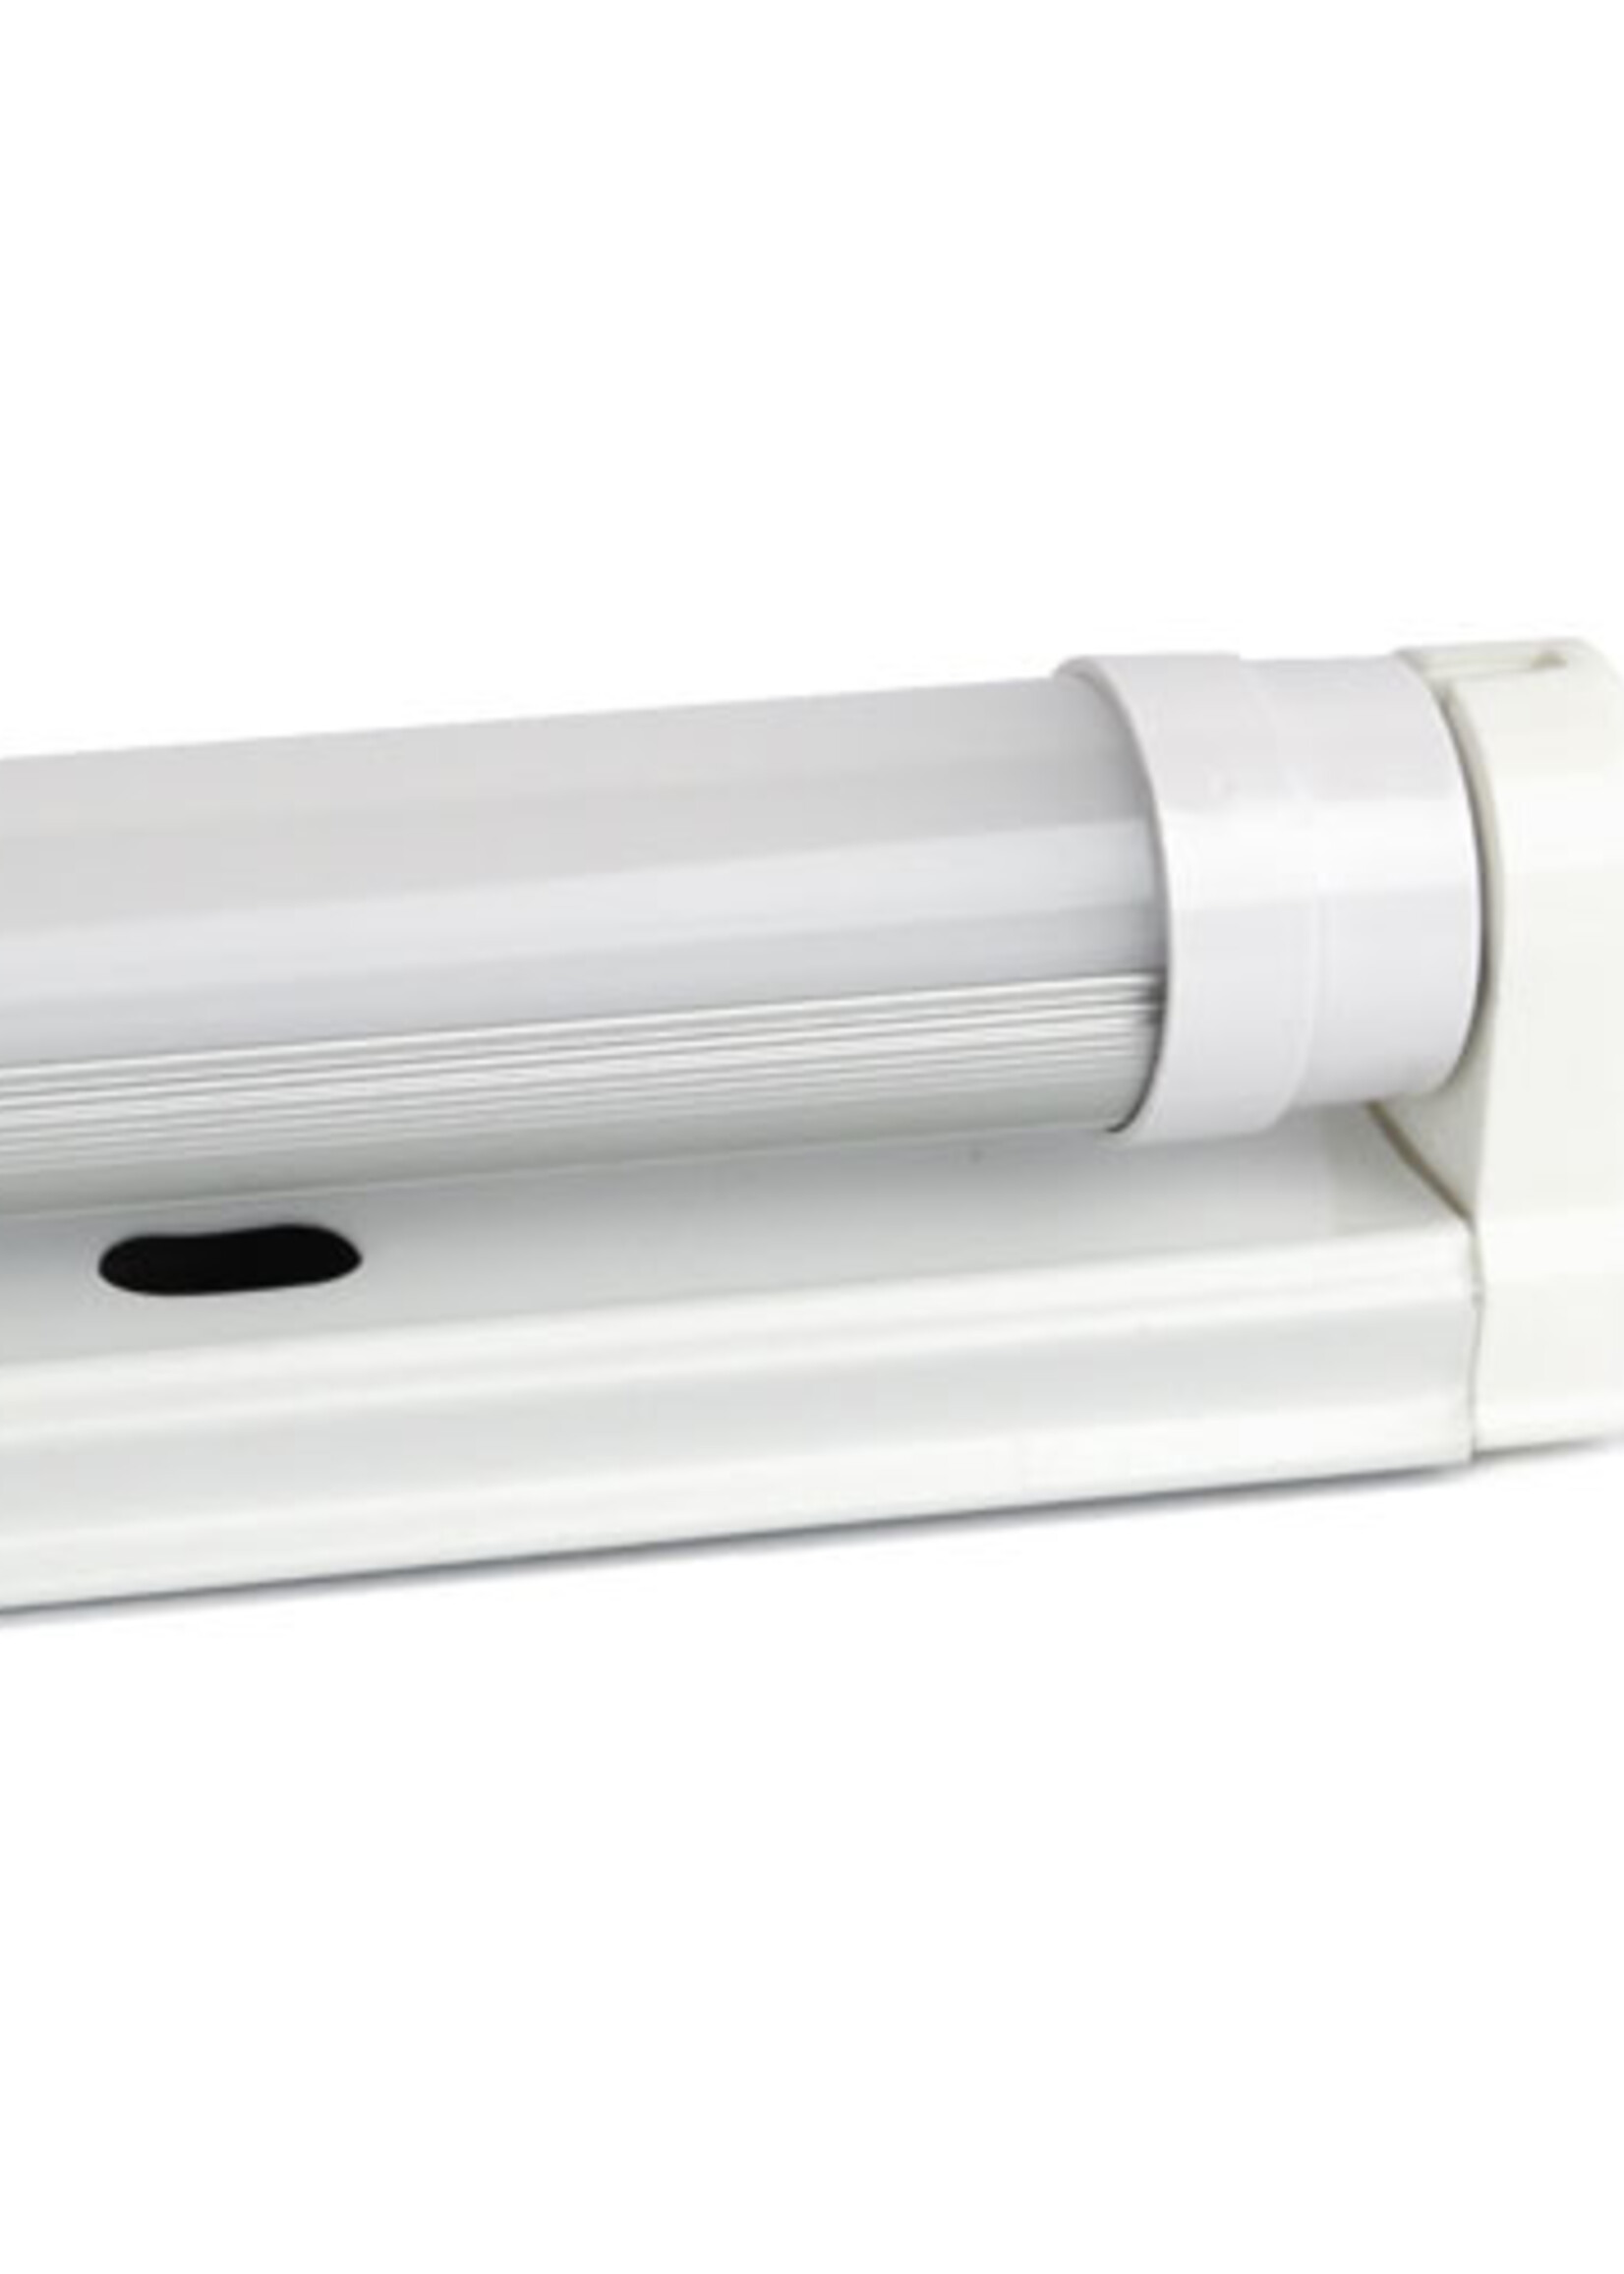 LEDWINKEL-Online T8 LED Tube light fixture 150cm